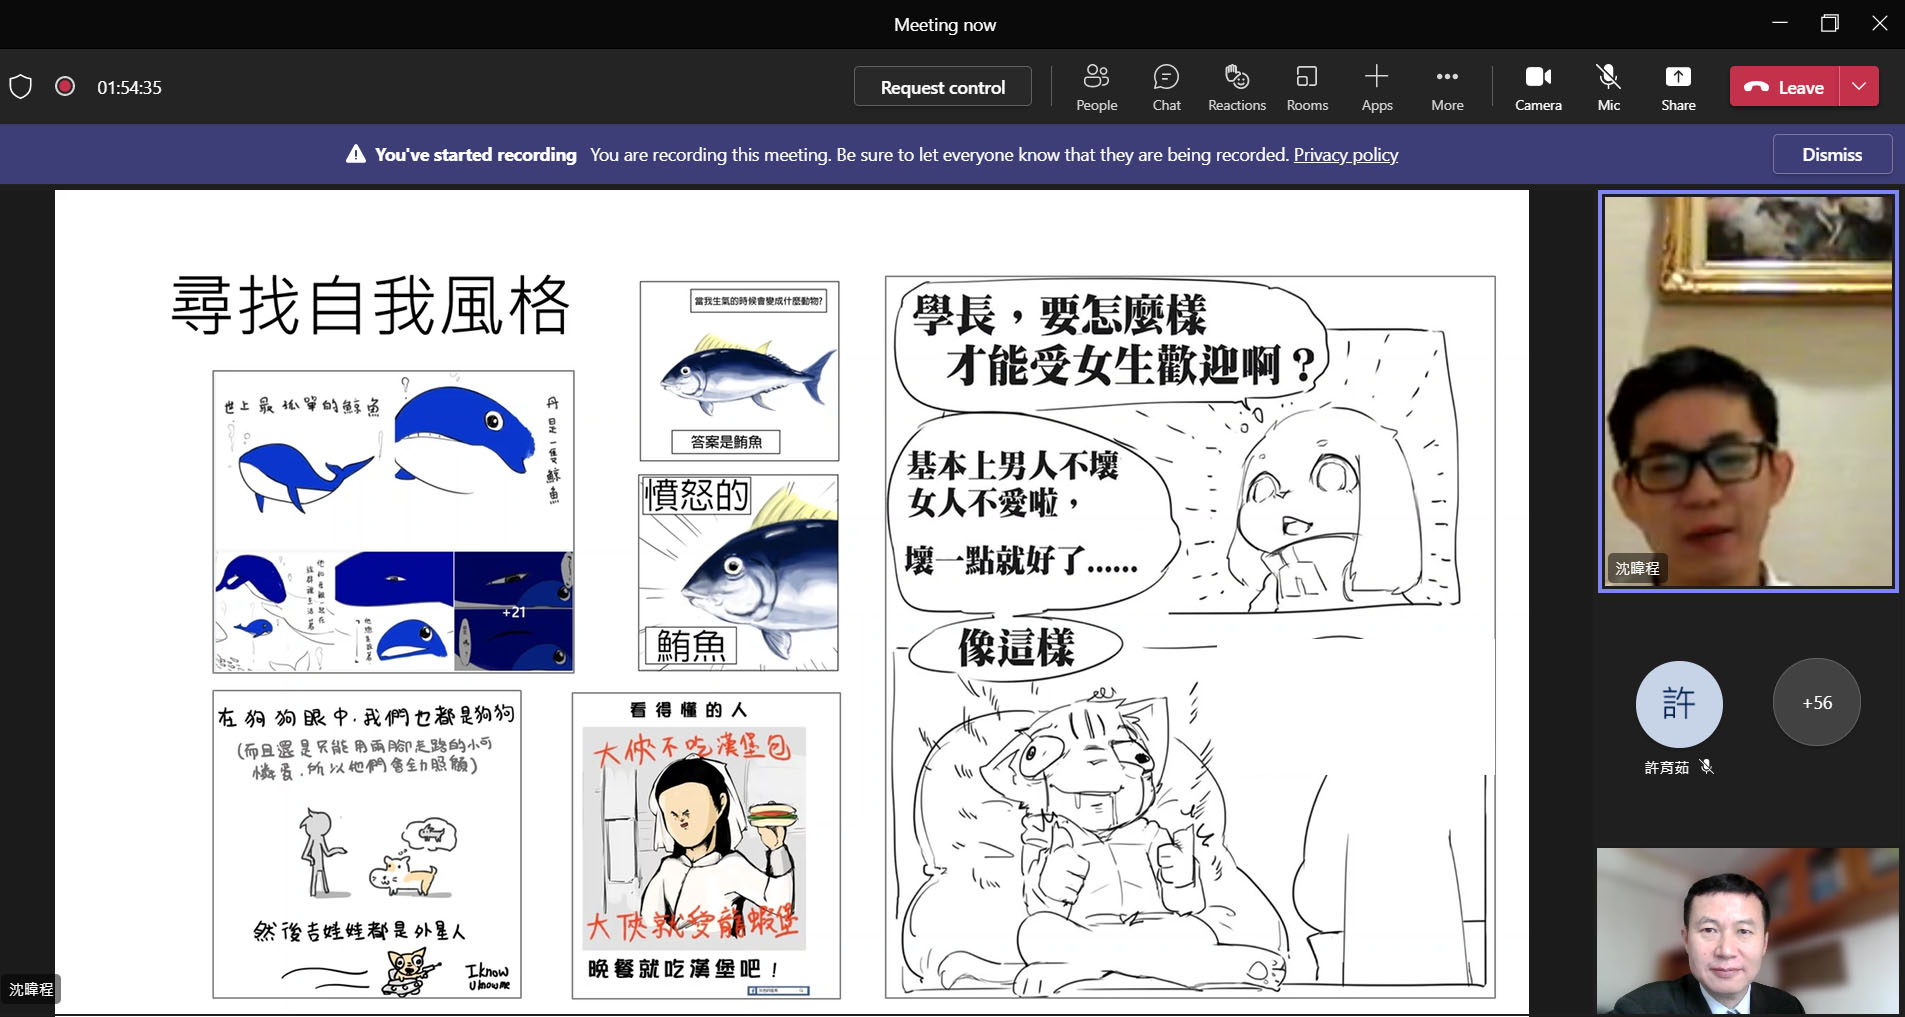 亞大校友網紅「灰色的斑馬」經營者沈暐程 (右上)， 說明圖文創作者如何在不同時期修改畫風，尋找出自我的風格的歷程